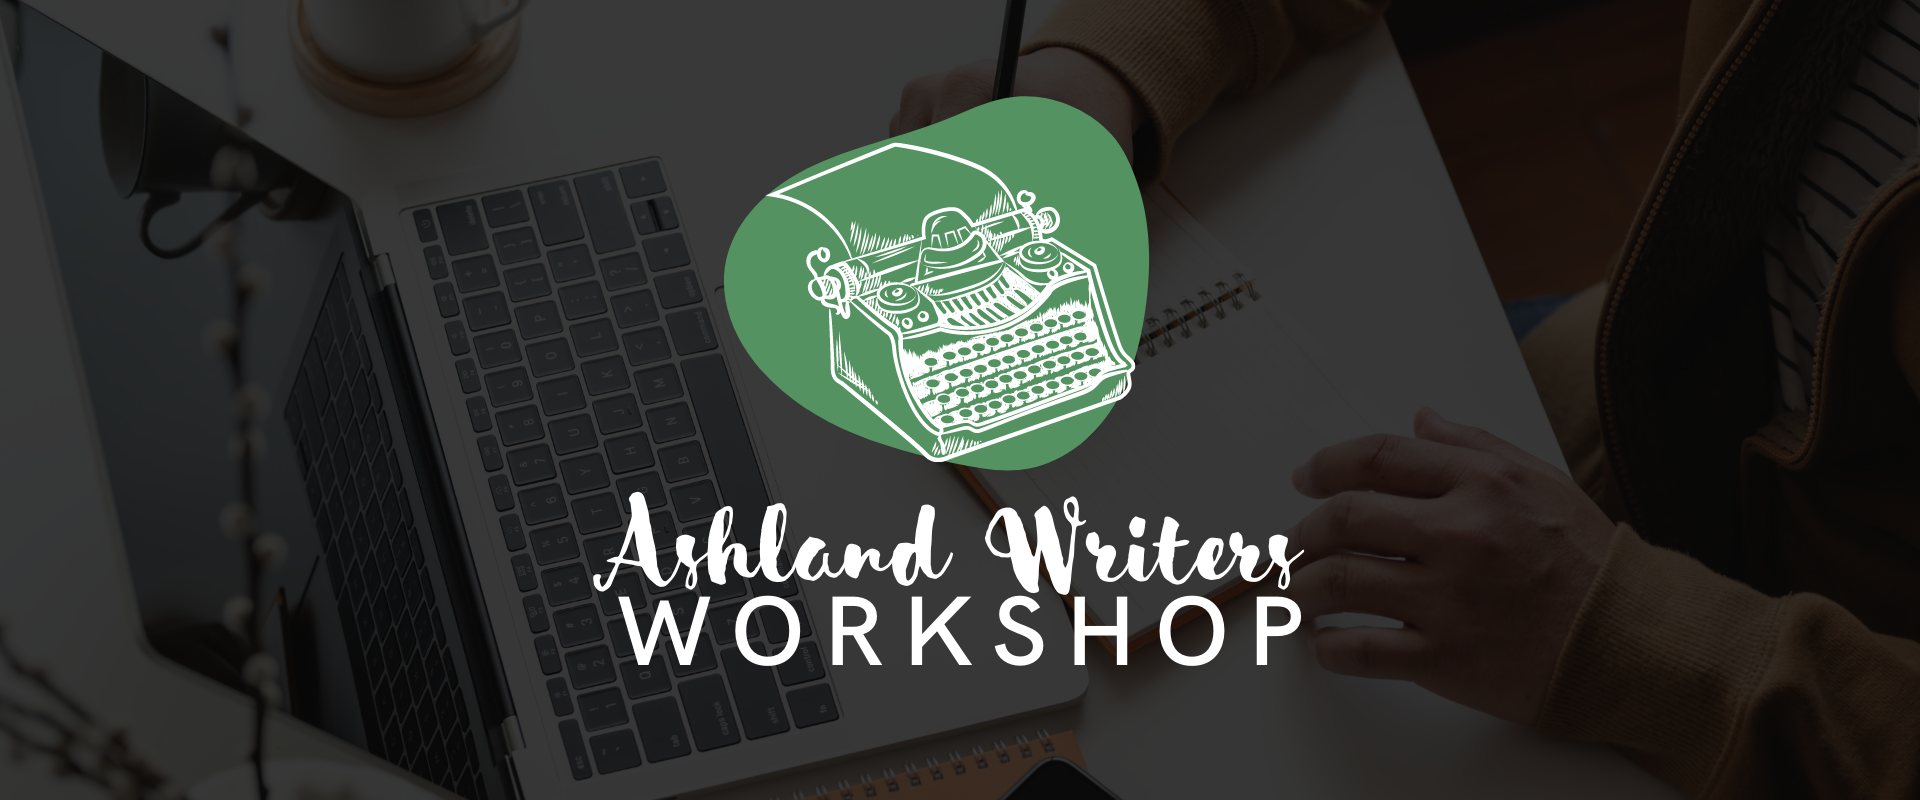 Ashland Writers Workshop